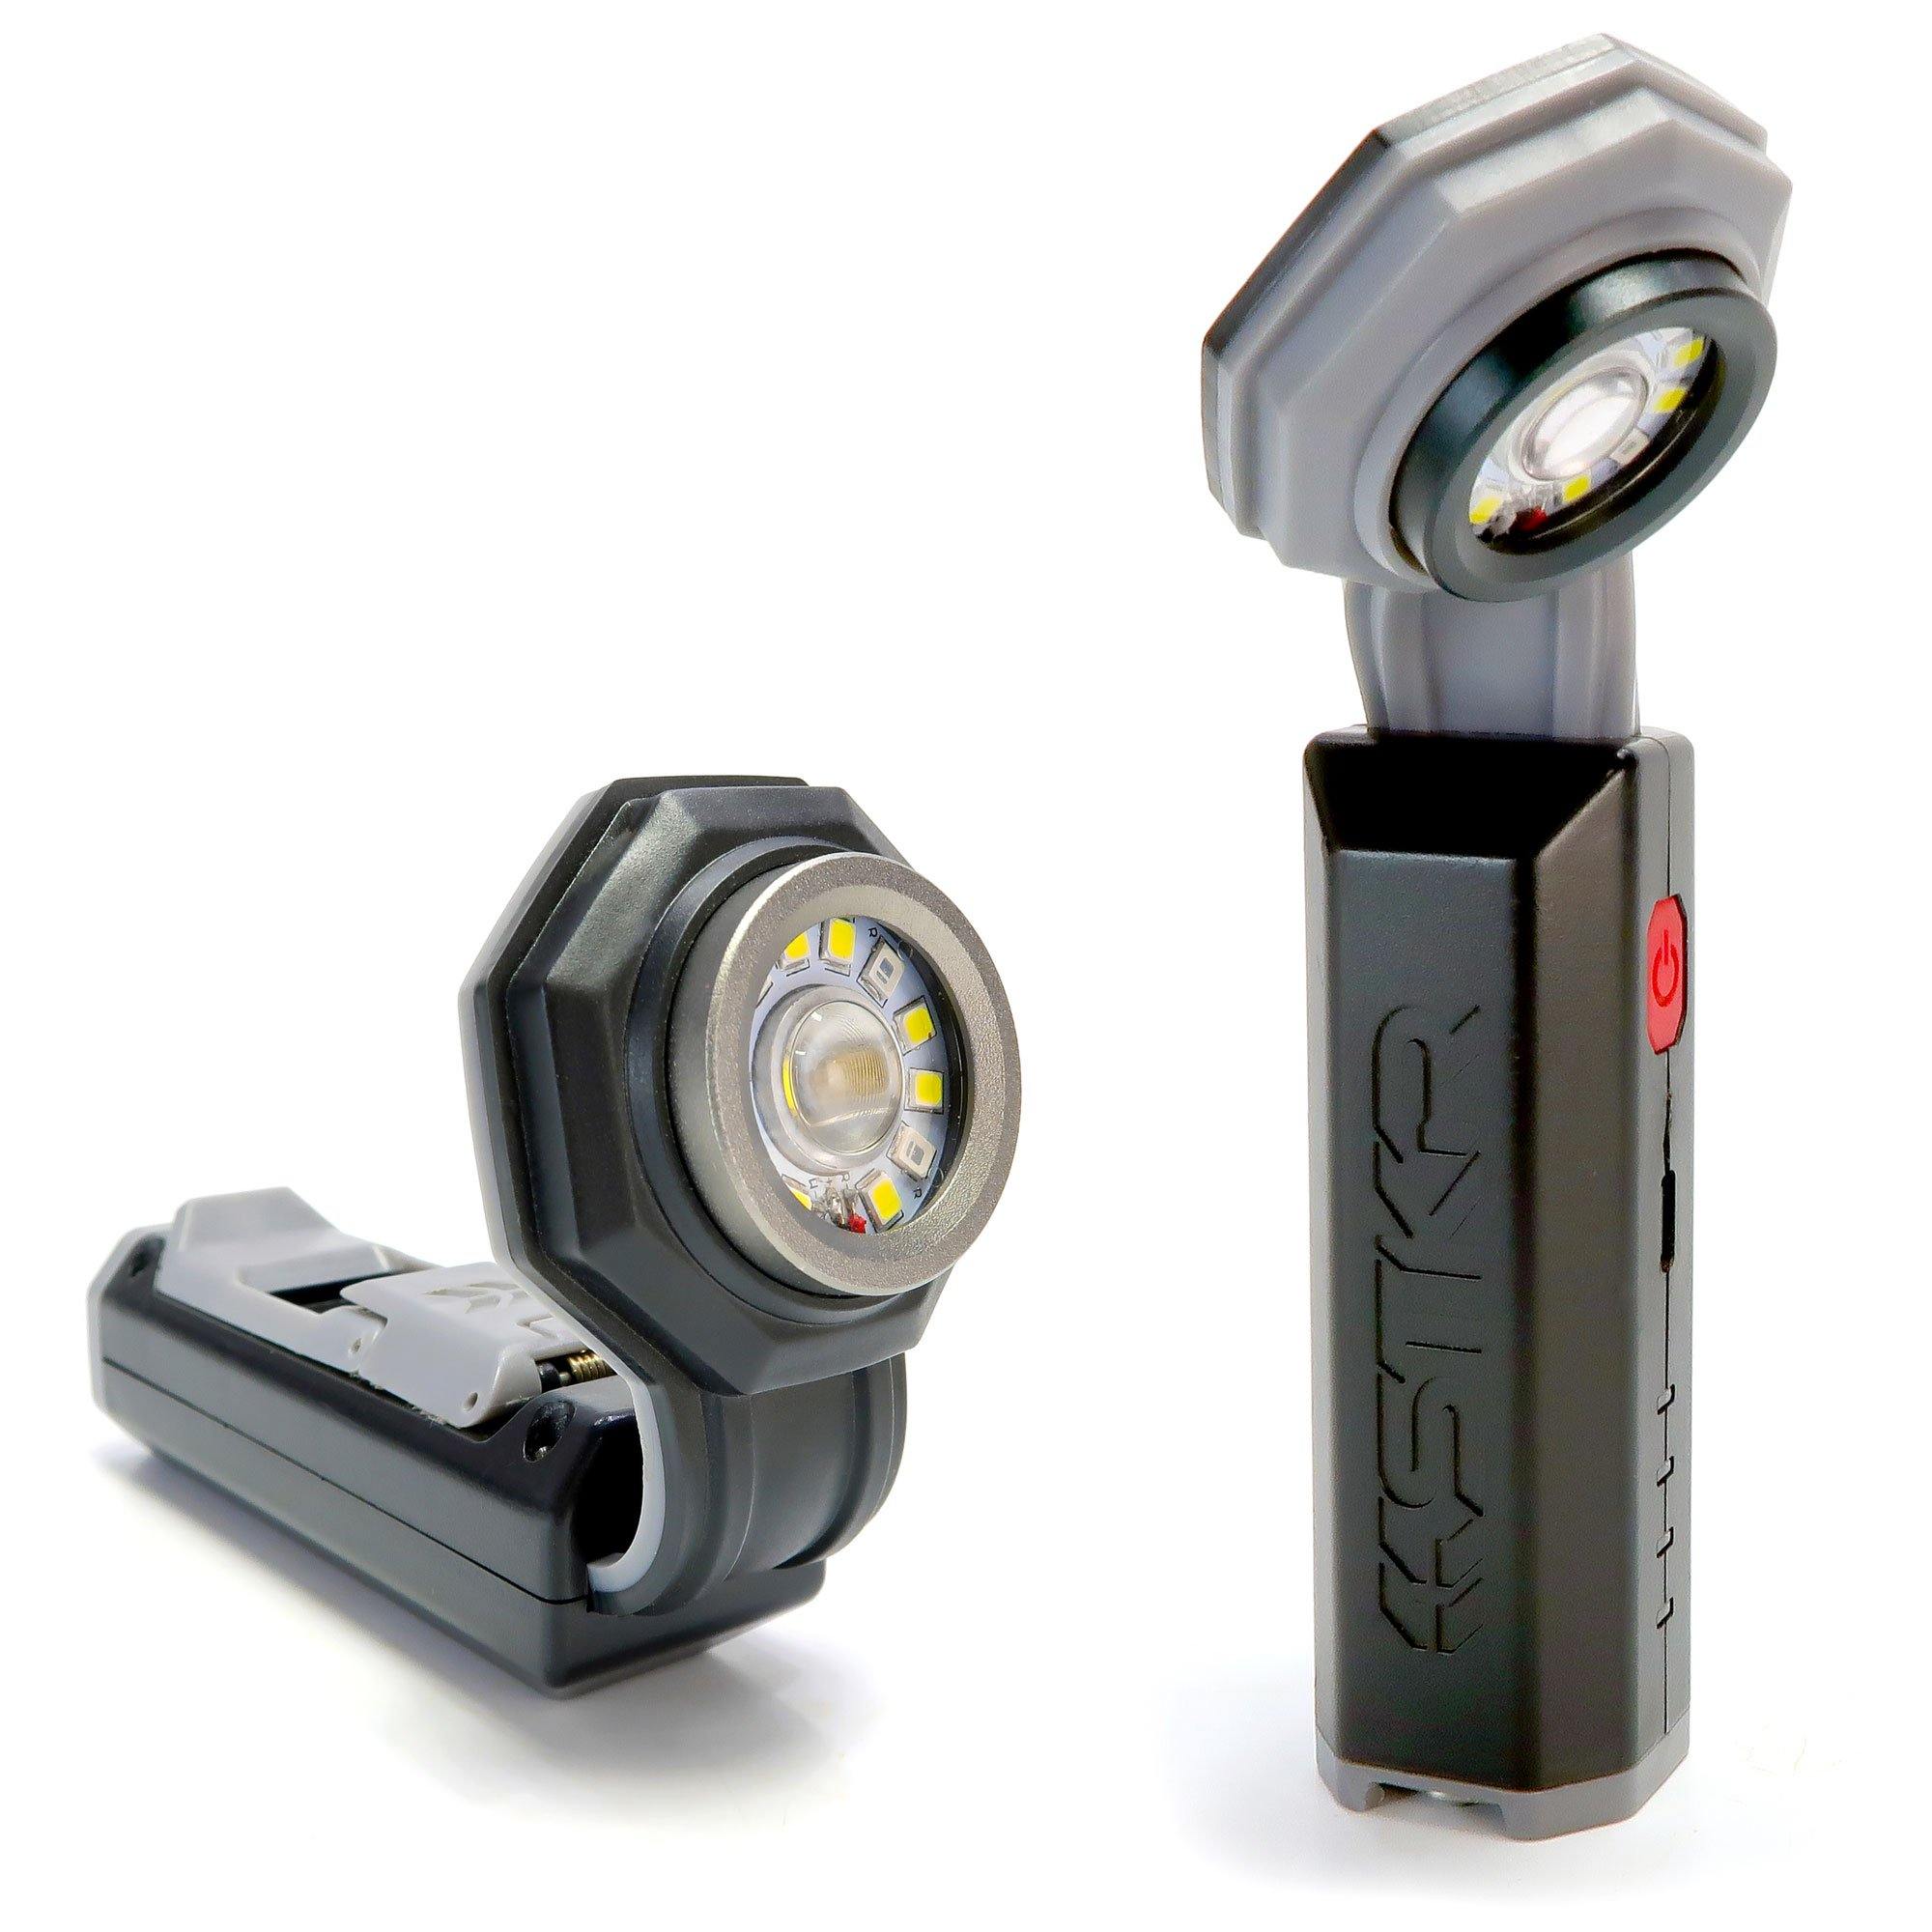 Service parts - Mini USB flexible arm LED Light for MSAK812